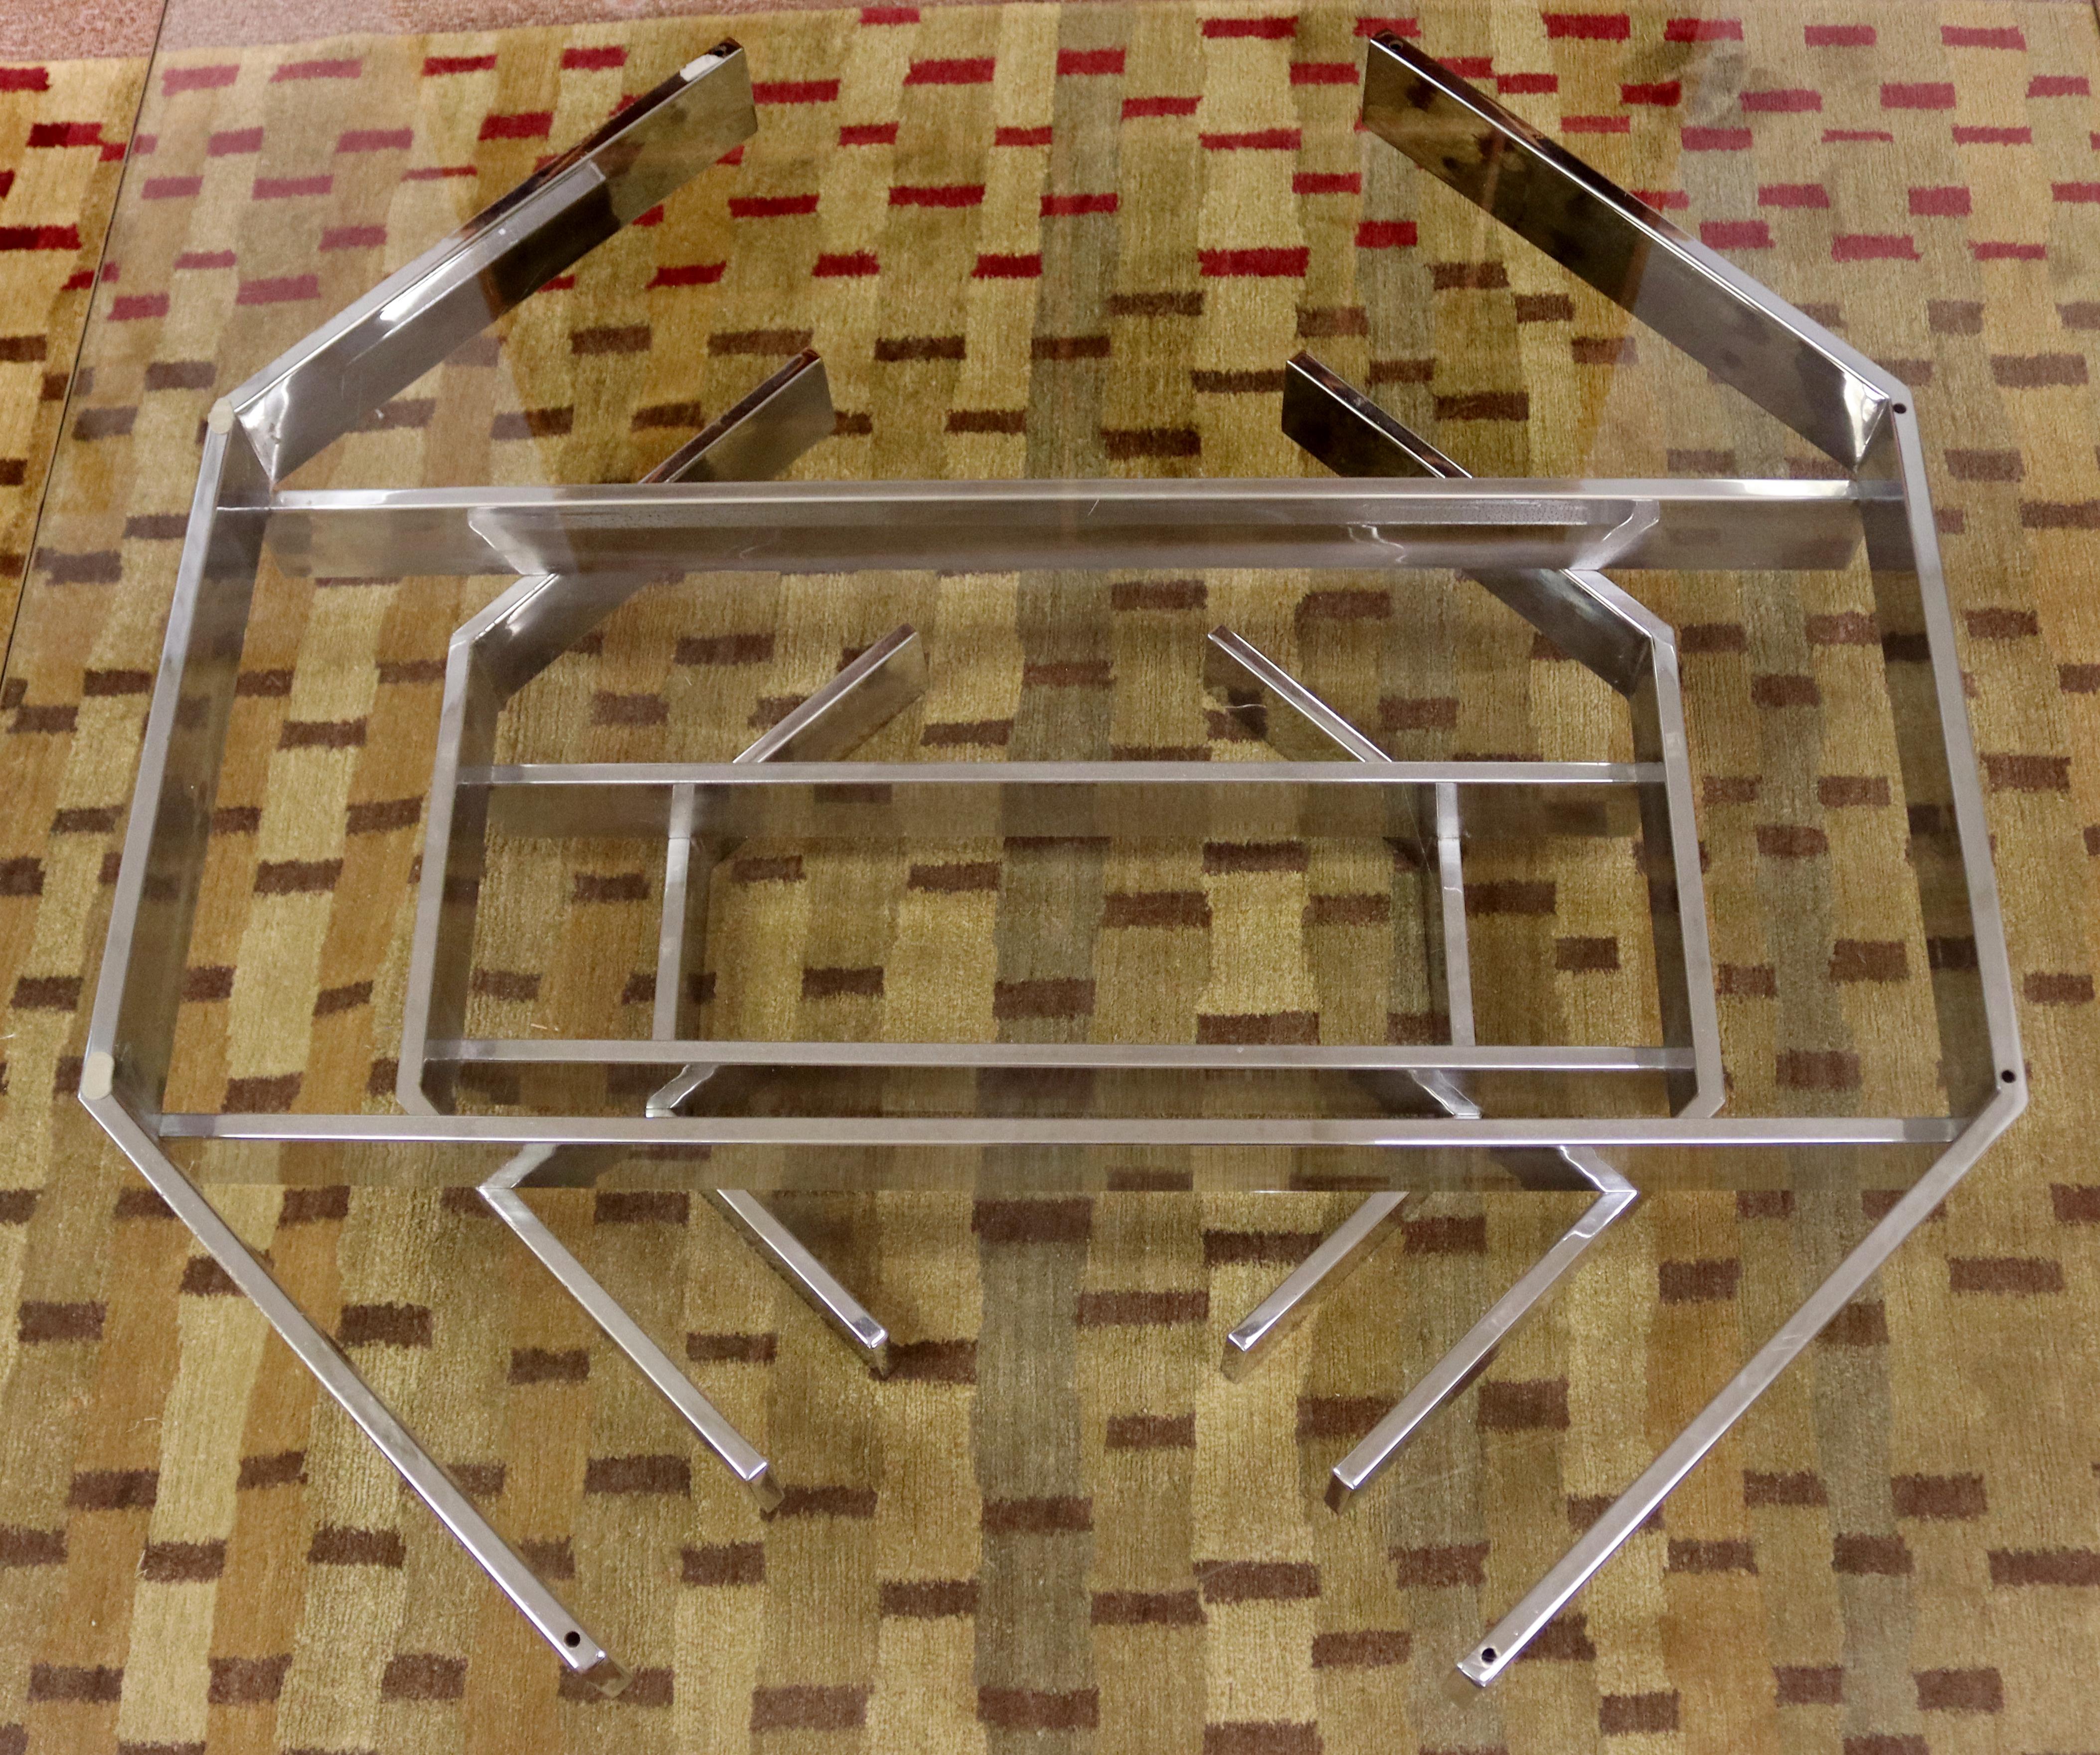 Wir bieten Ihnen einen wunderschönen Couchtisch mit einer Glasplatte auf einem geometrisch geformten Chromsockel von Paul Mayen aus den 1960er Jahren. In ausgezeichnetem Vintage-Zustand, mit ein paar Kratzern auf der Oberfläche des Glases. Die